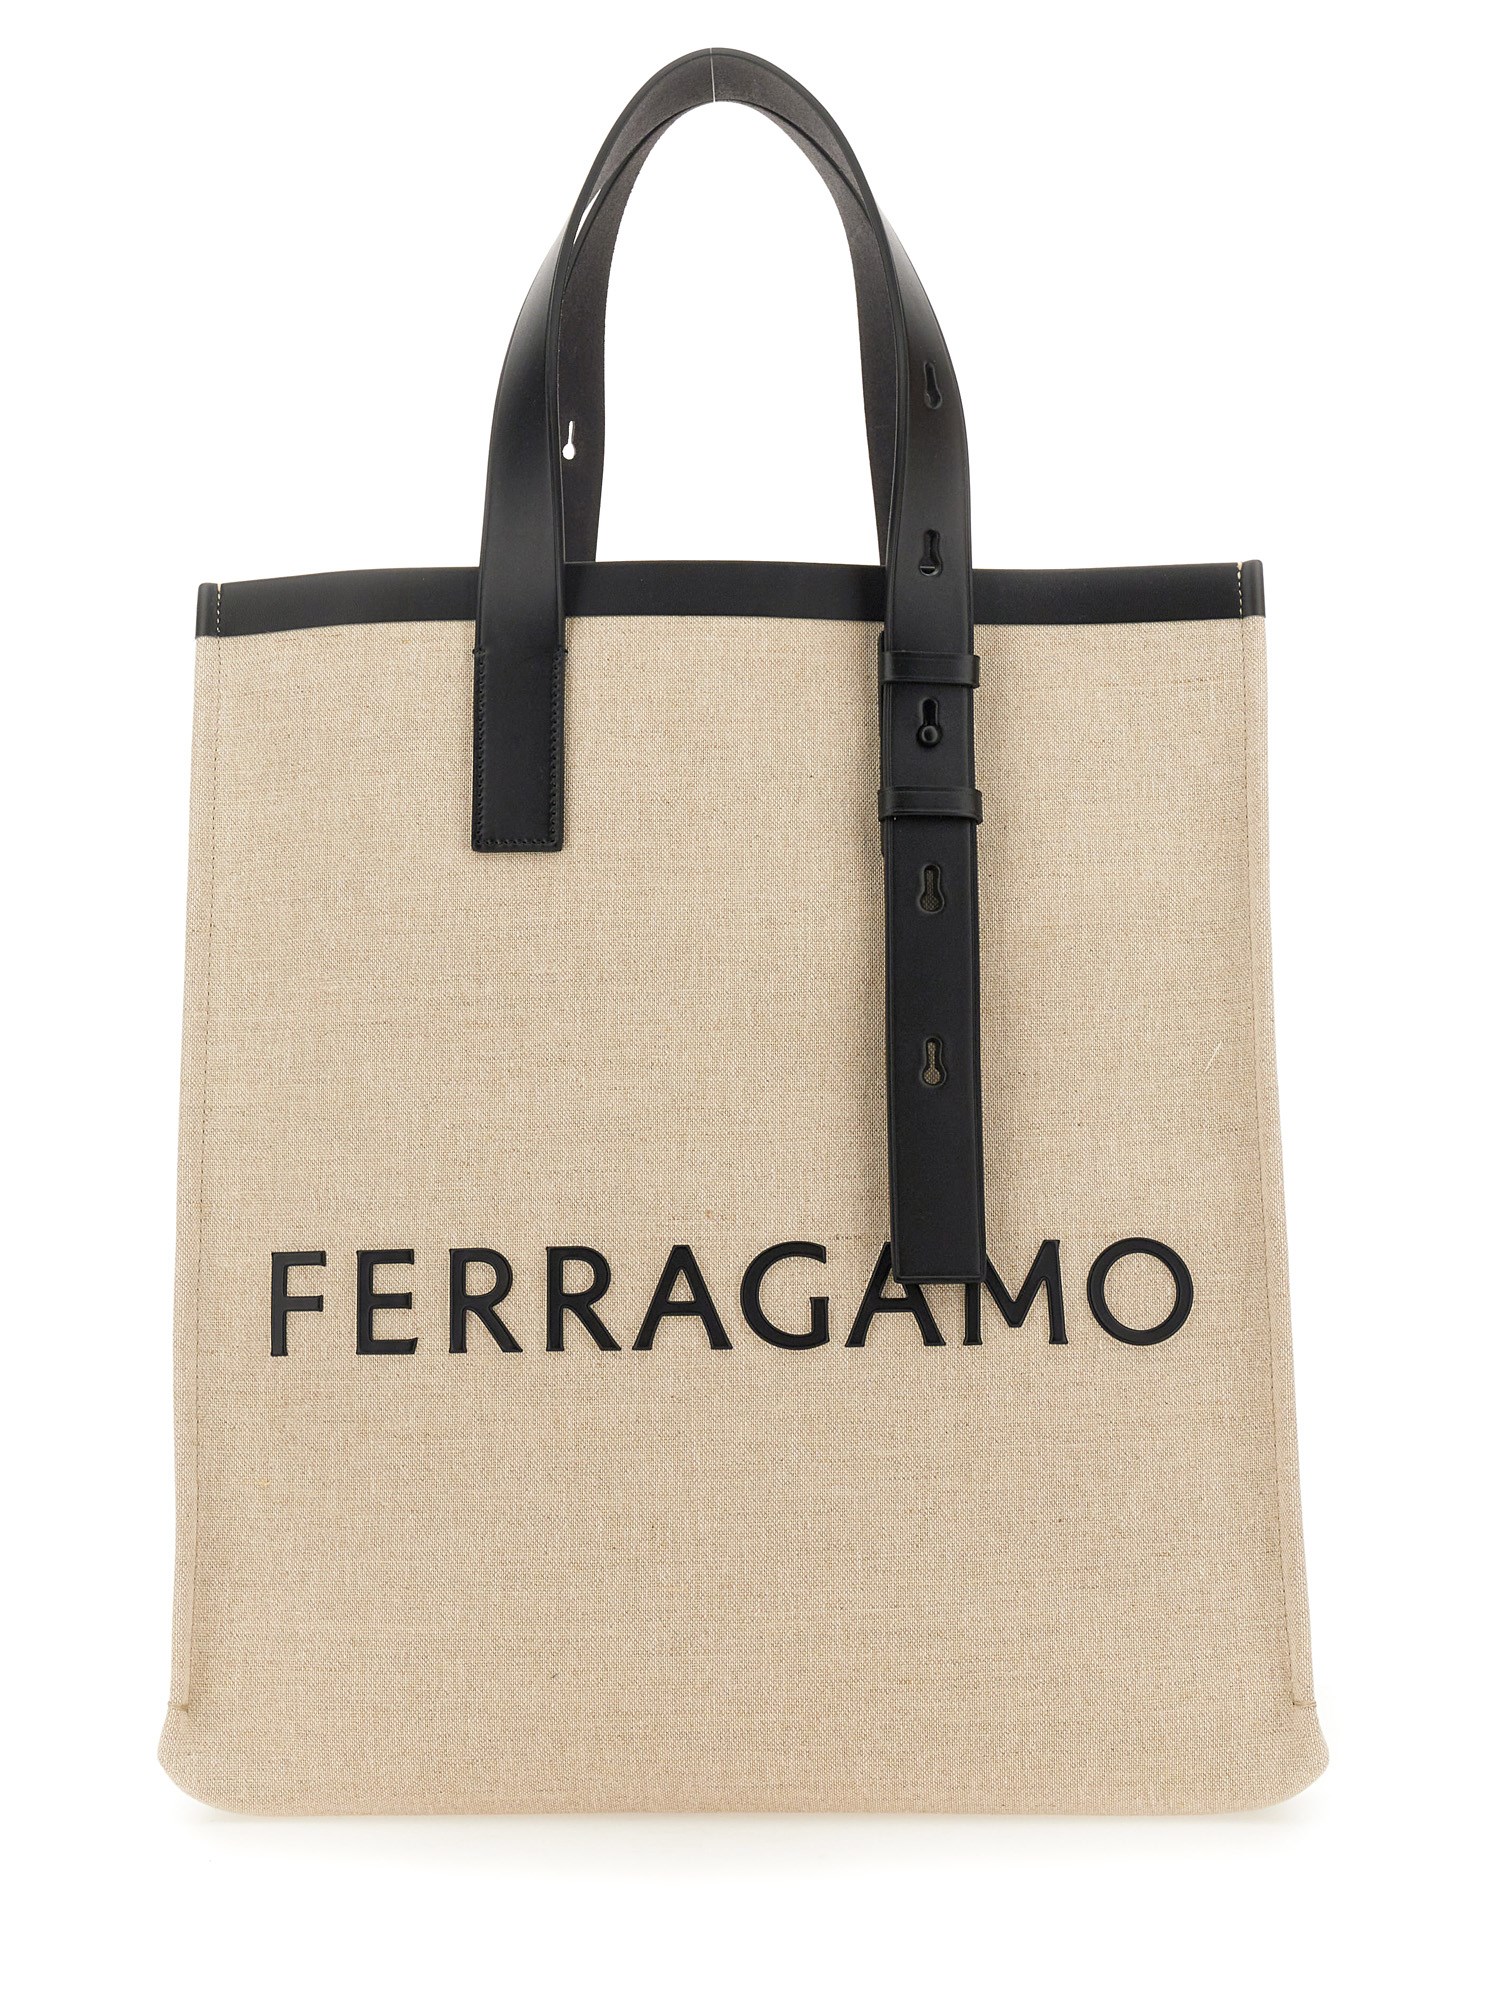 ferragamo tote bag with logo